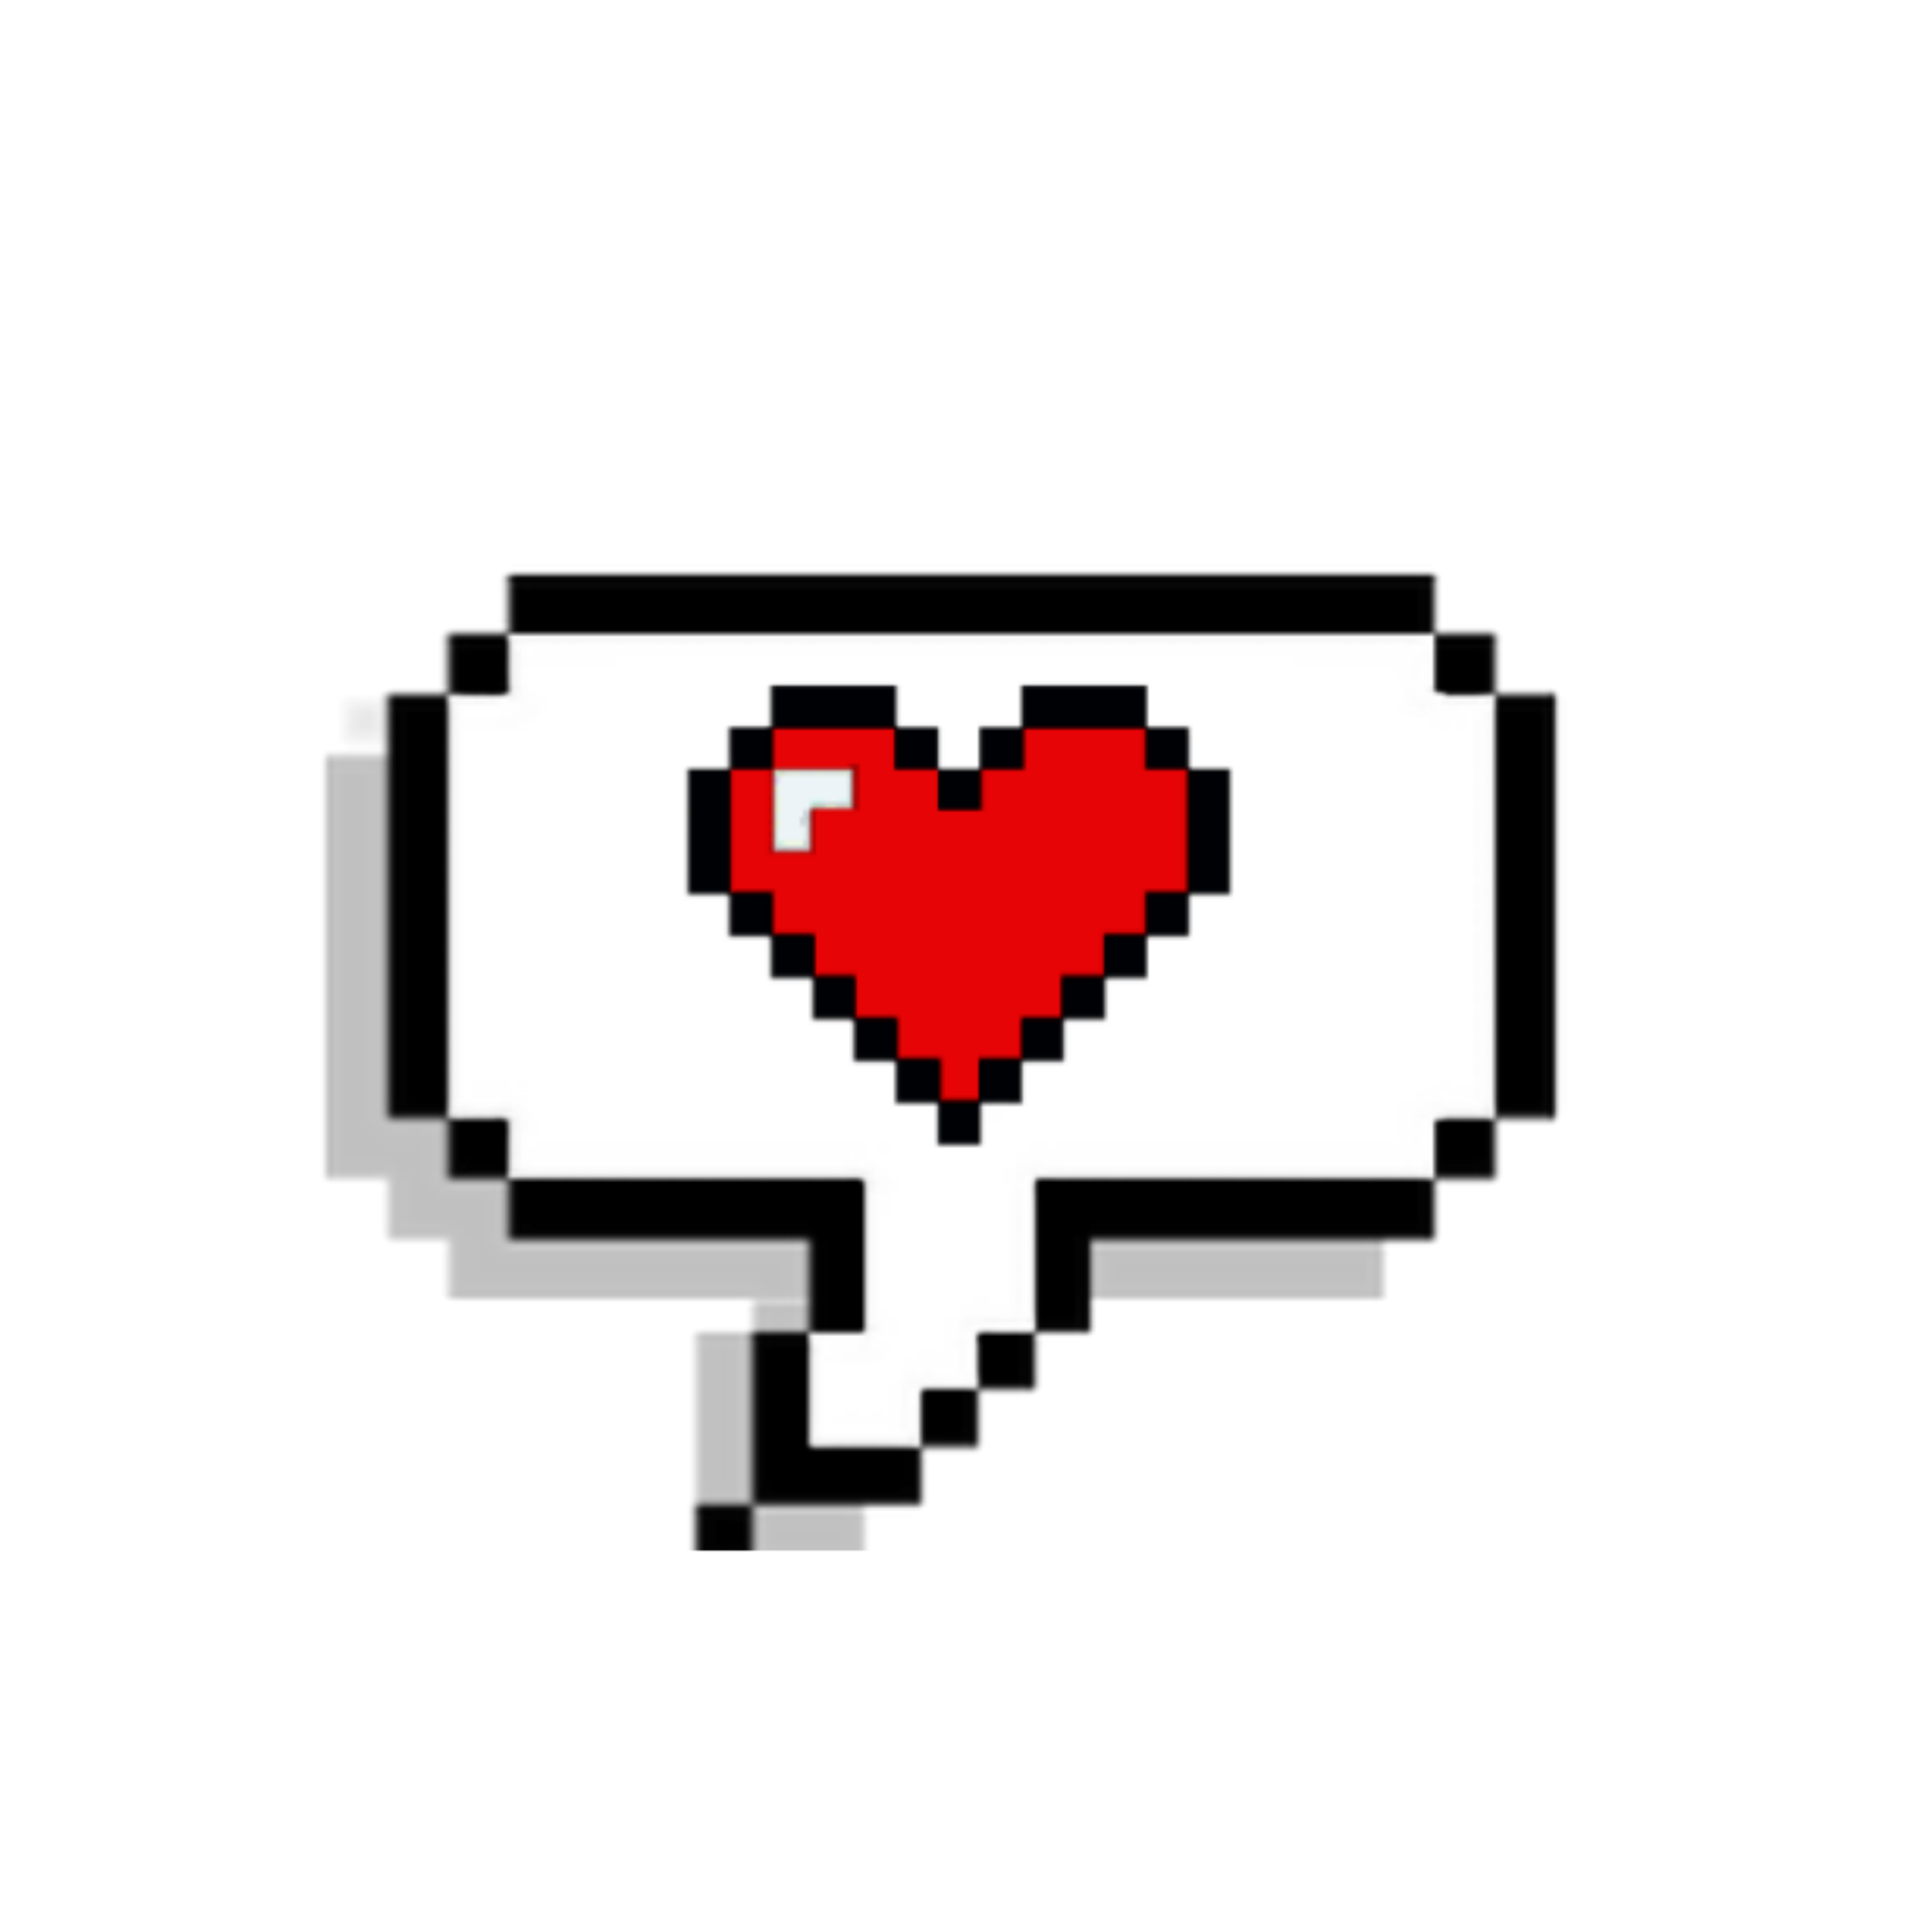 #balloon #heart #hearts #pixel #pixelart #edits #freetoedit